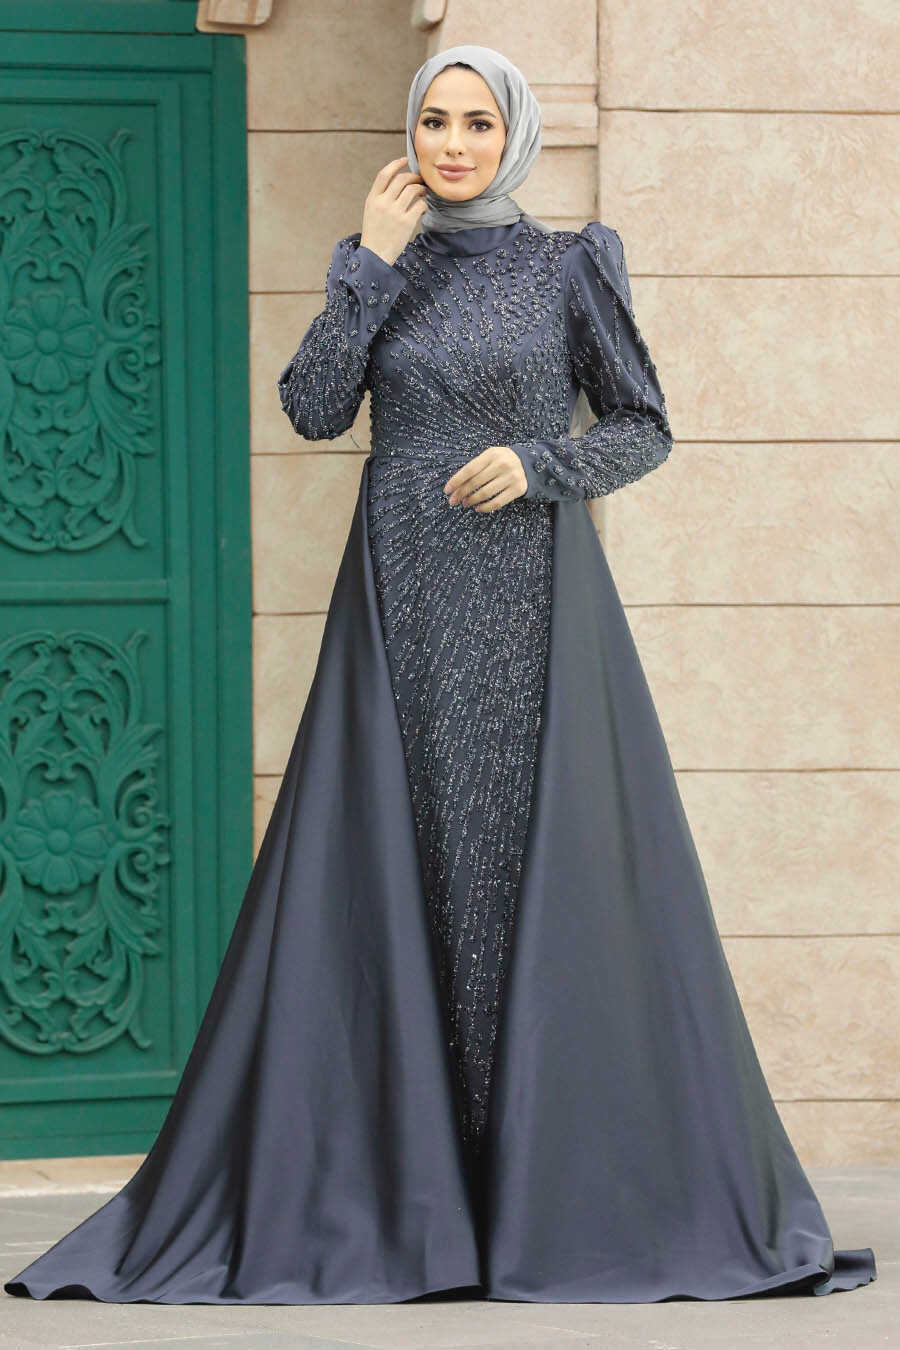 Neva Style - Modern Antrasit Modest Islamic Clothing Wedding Dress 23310ANT